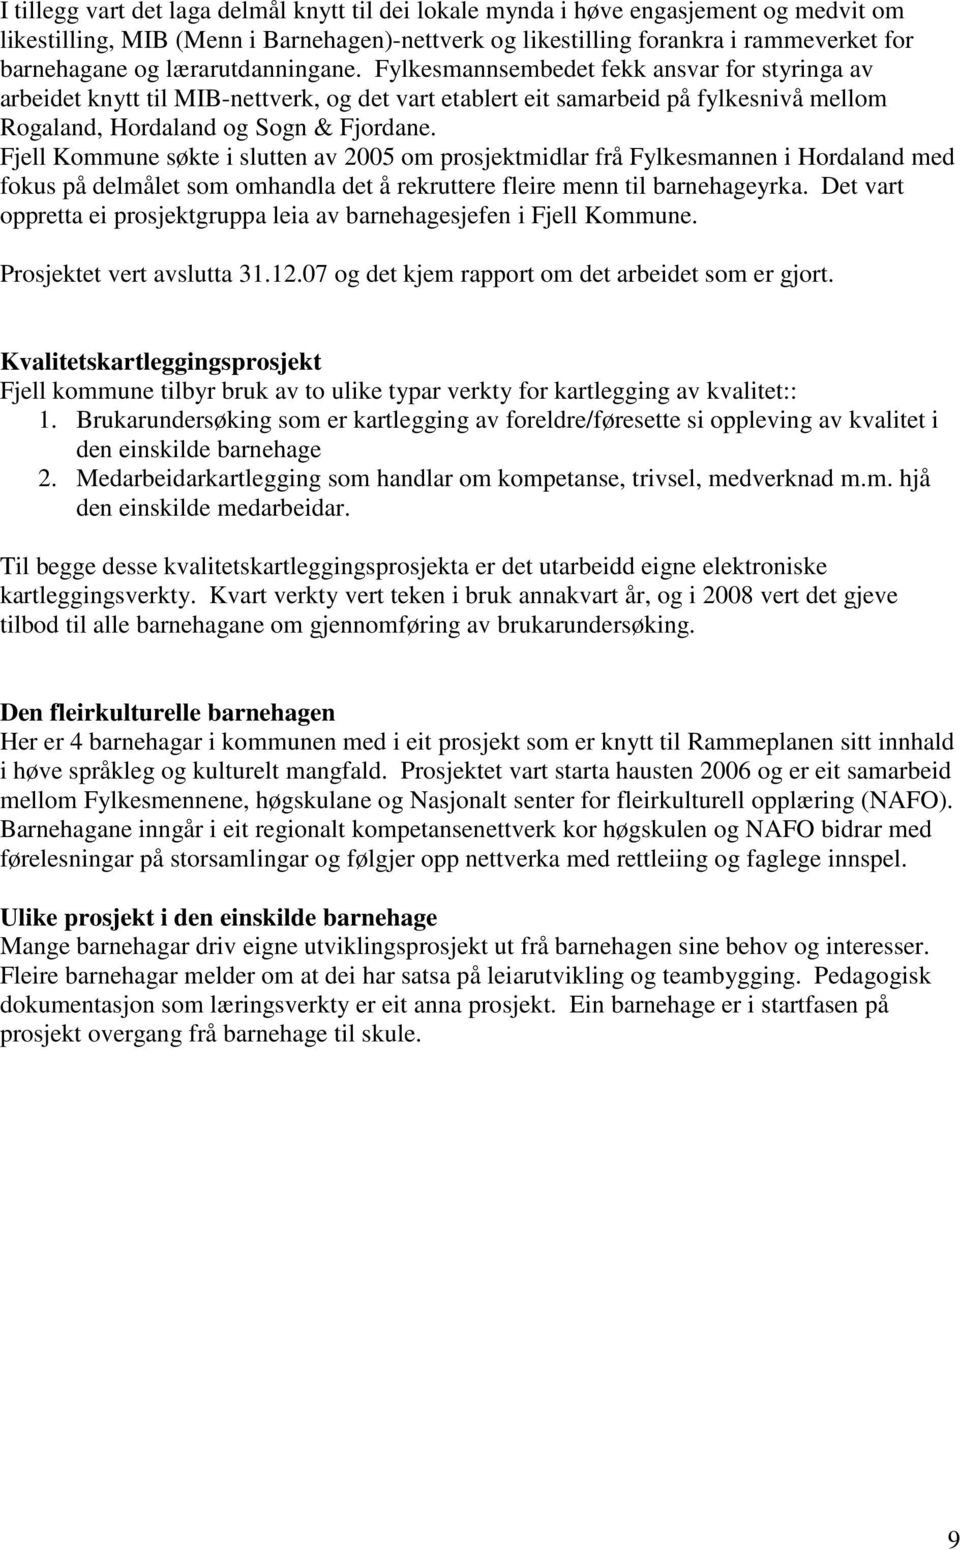 Fjell Kommune søkte i slutten av 2005 om prosjektmidlar frå Fylkesmannen i Hordaland med fokus på delmålet som omhandla det å rekruttere fleire menn til geyrka.